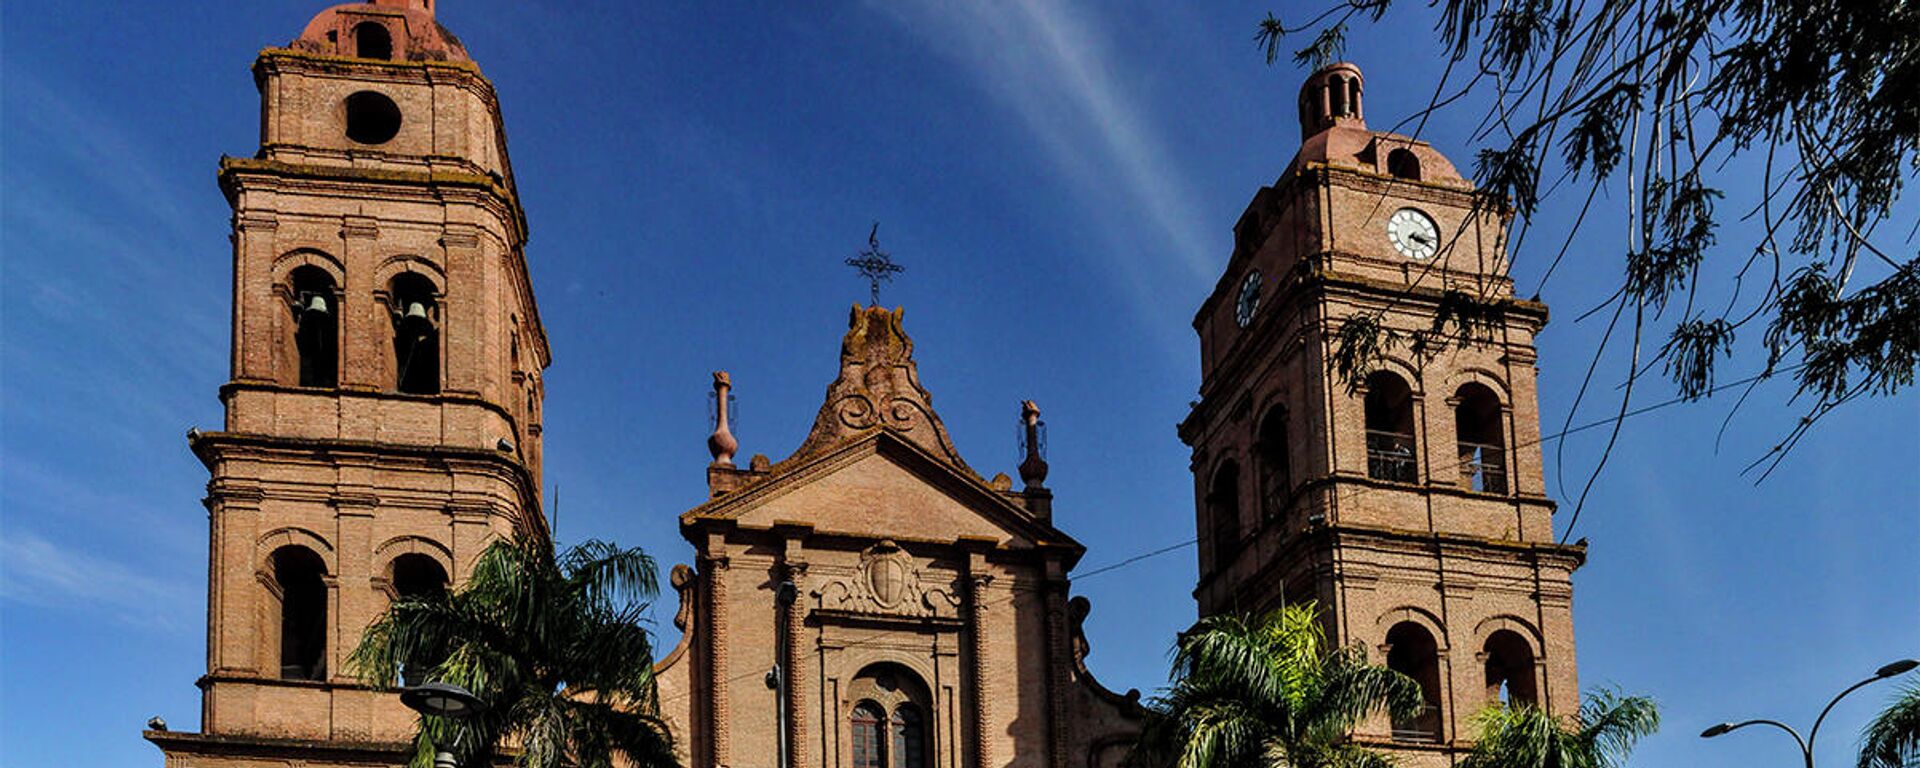 Catedral de Santa Cruz, Bolivia - Sputnik Mundo, 1920, 27.10.2021